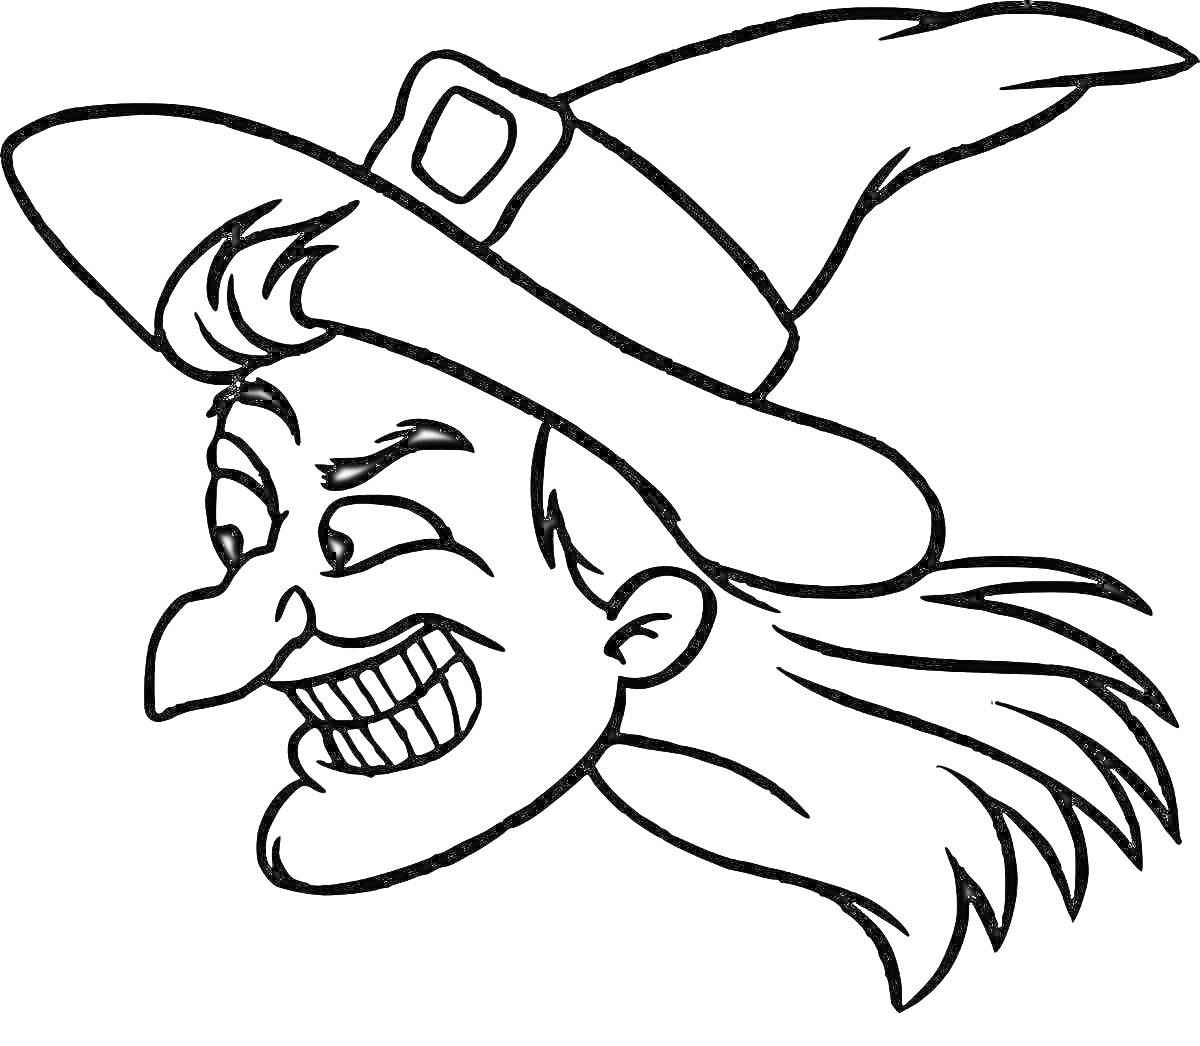 Раскраска Злая ведьма с длинным носом, острыми зубами, в шляпе с пряжкой и длинными волосами